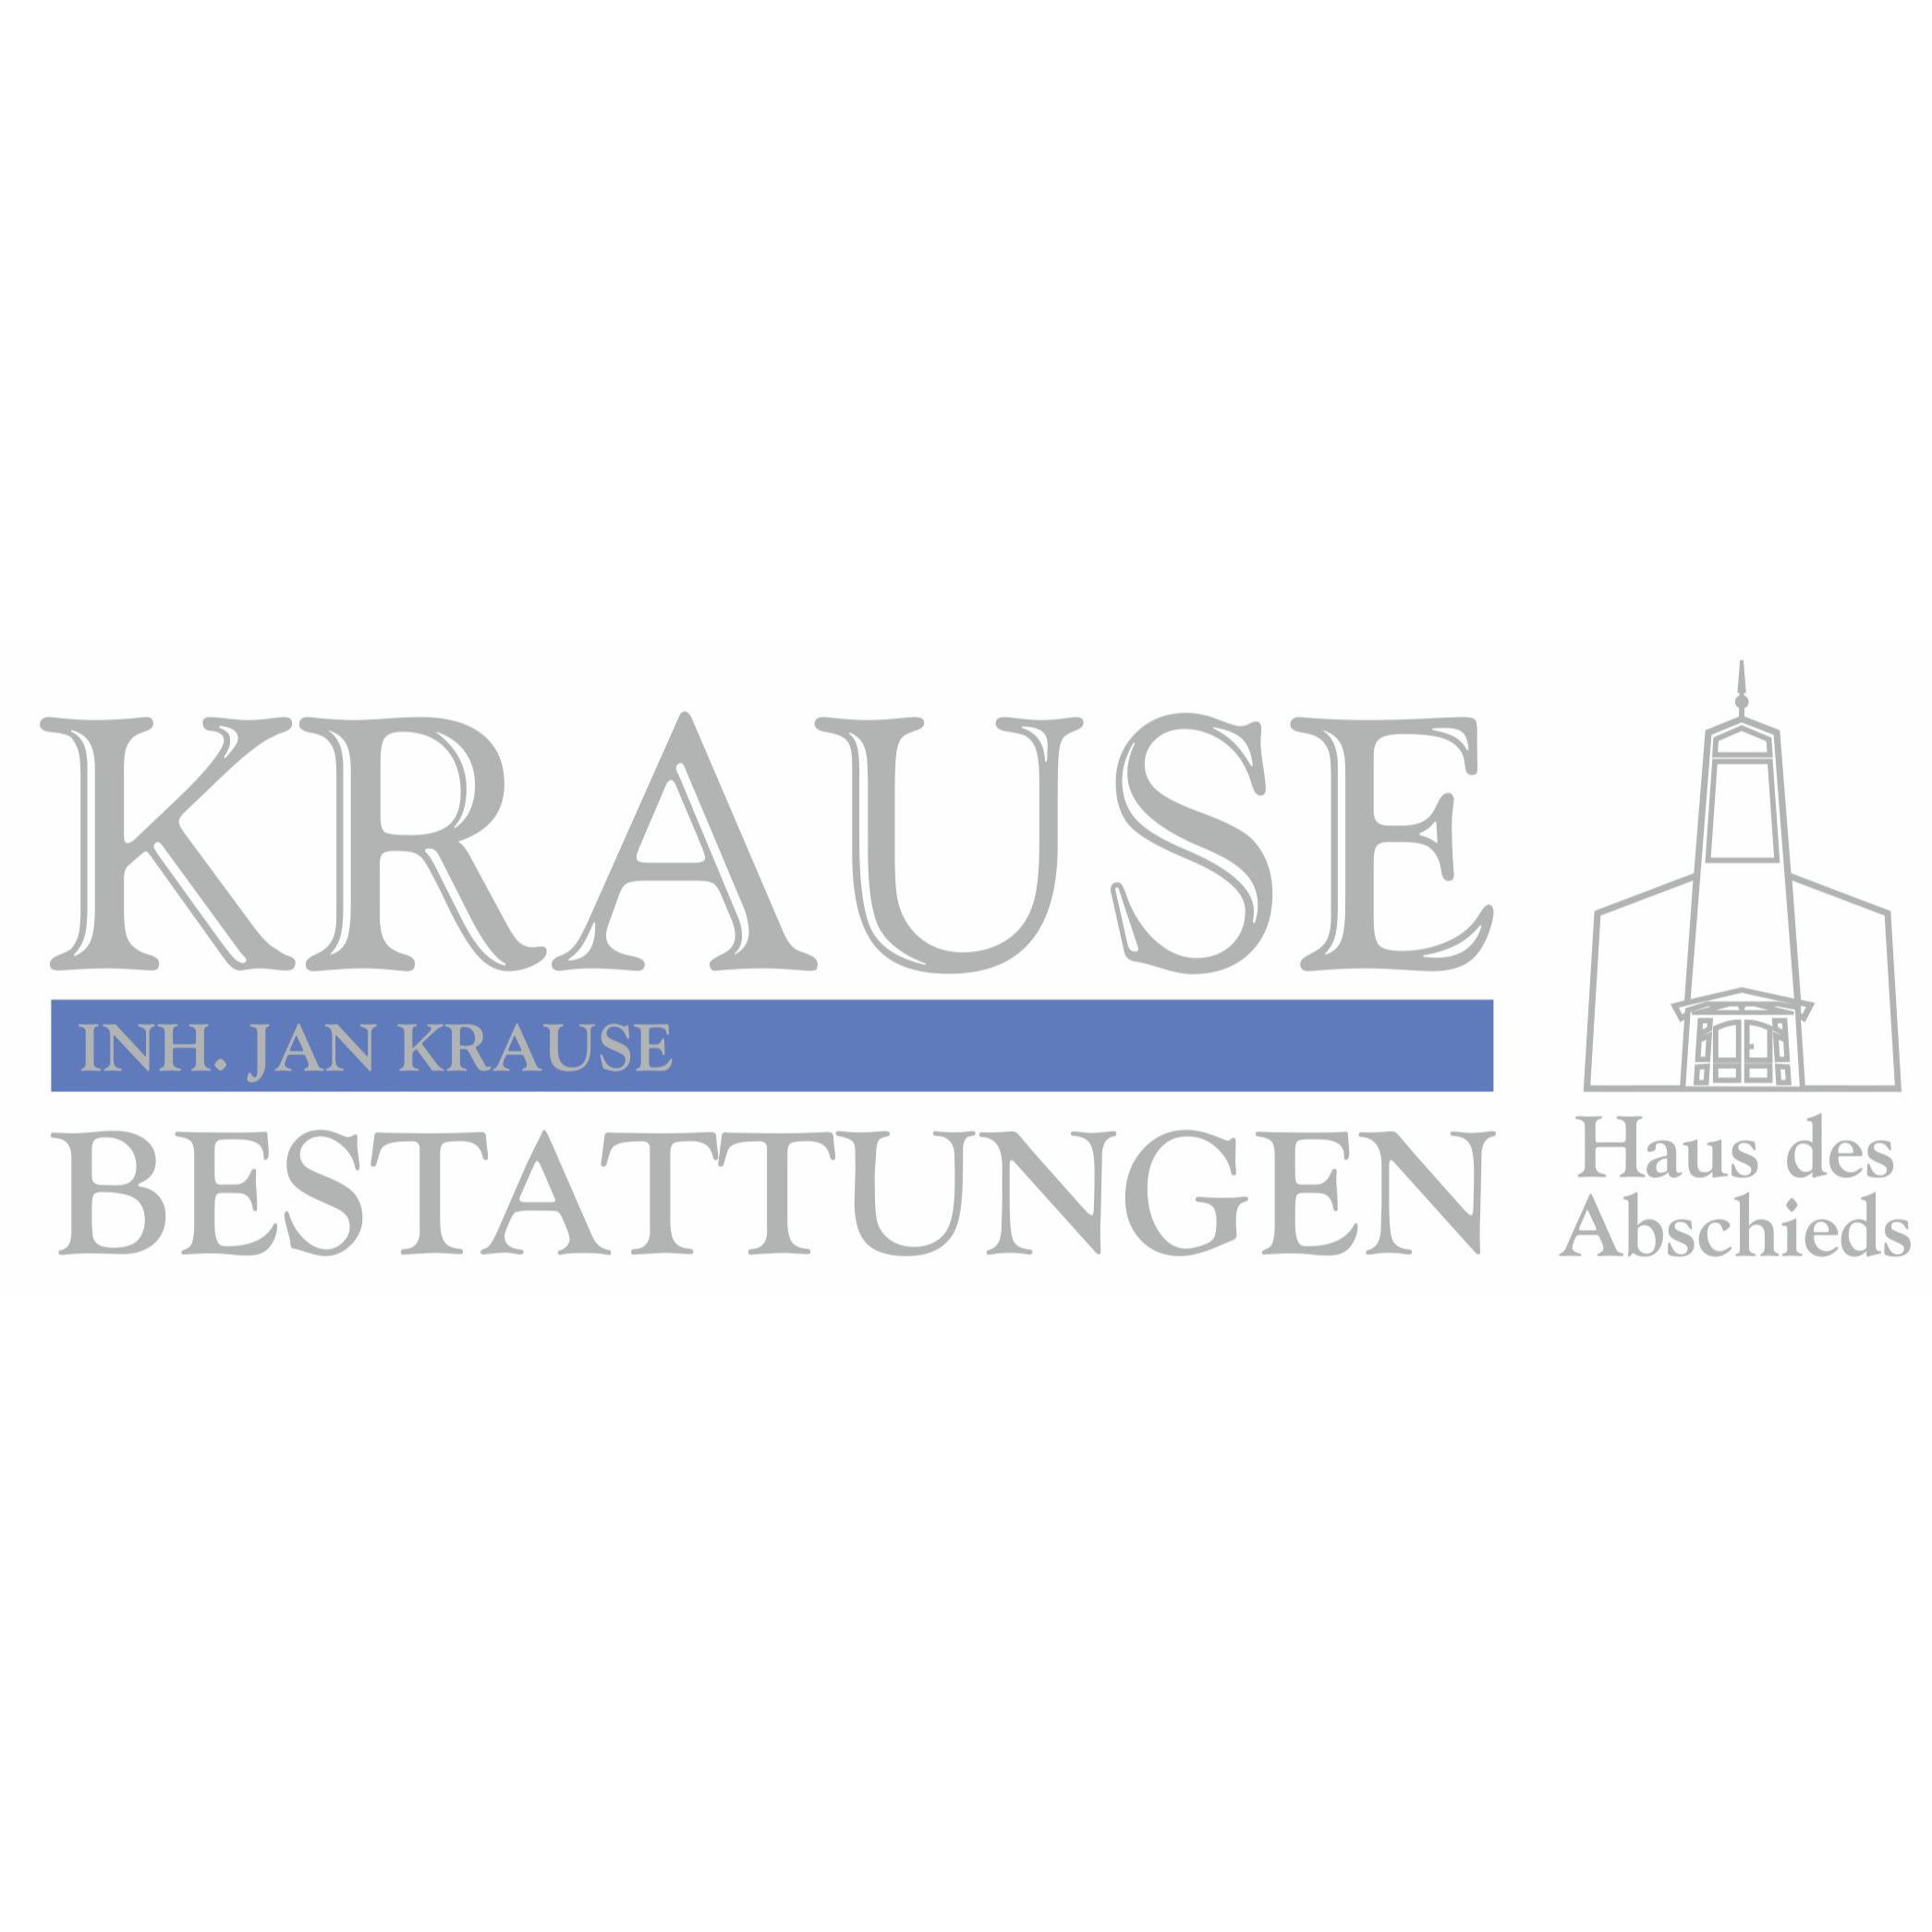 Jan Krause Bestattungen - Haus des Abschieds in Lägerdorf - Logo